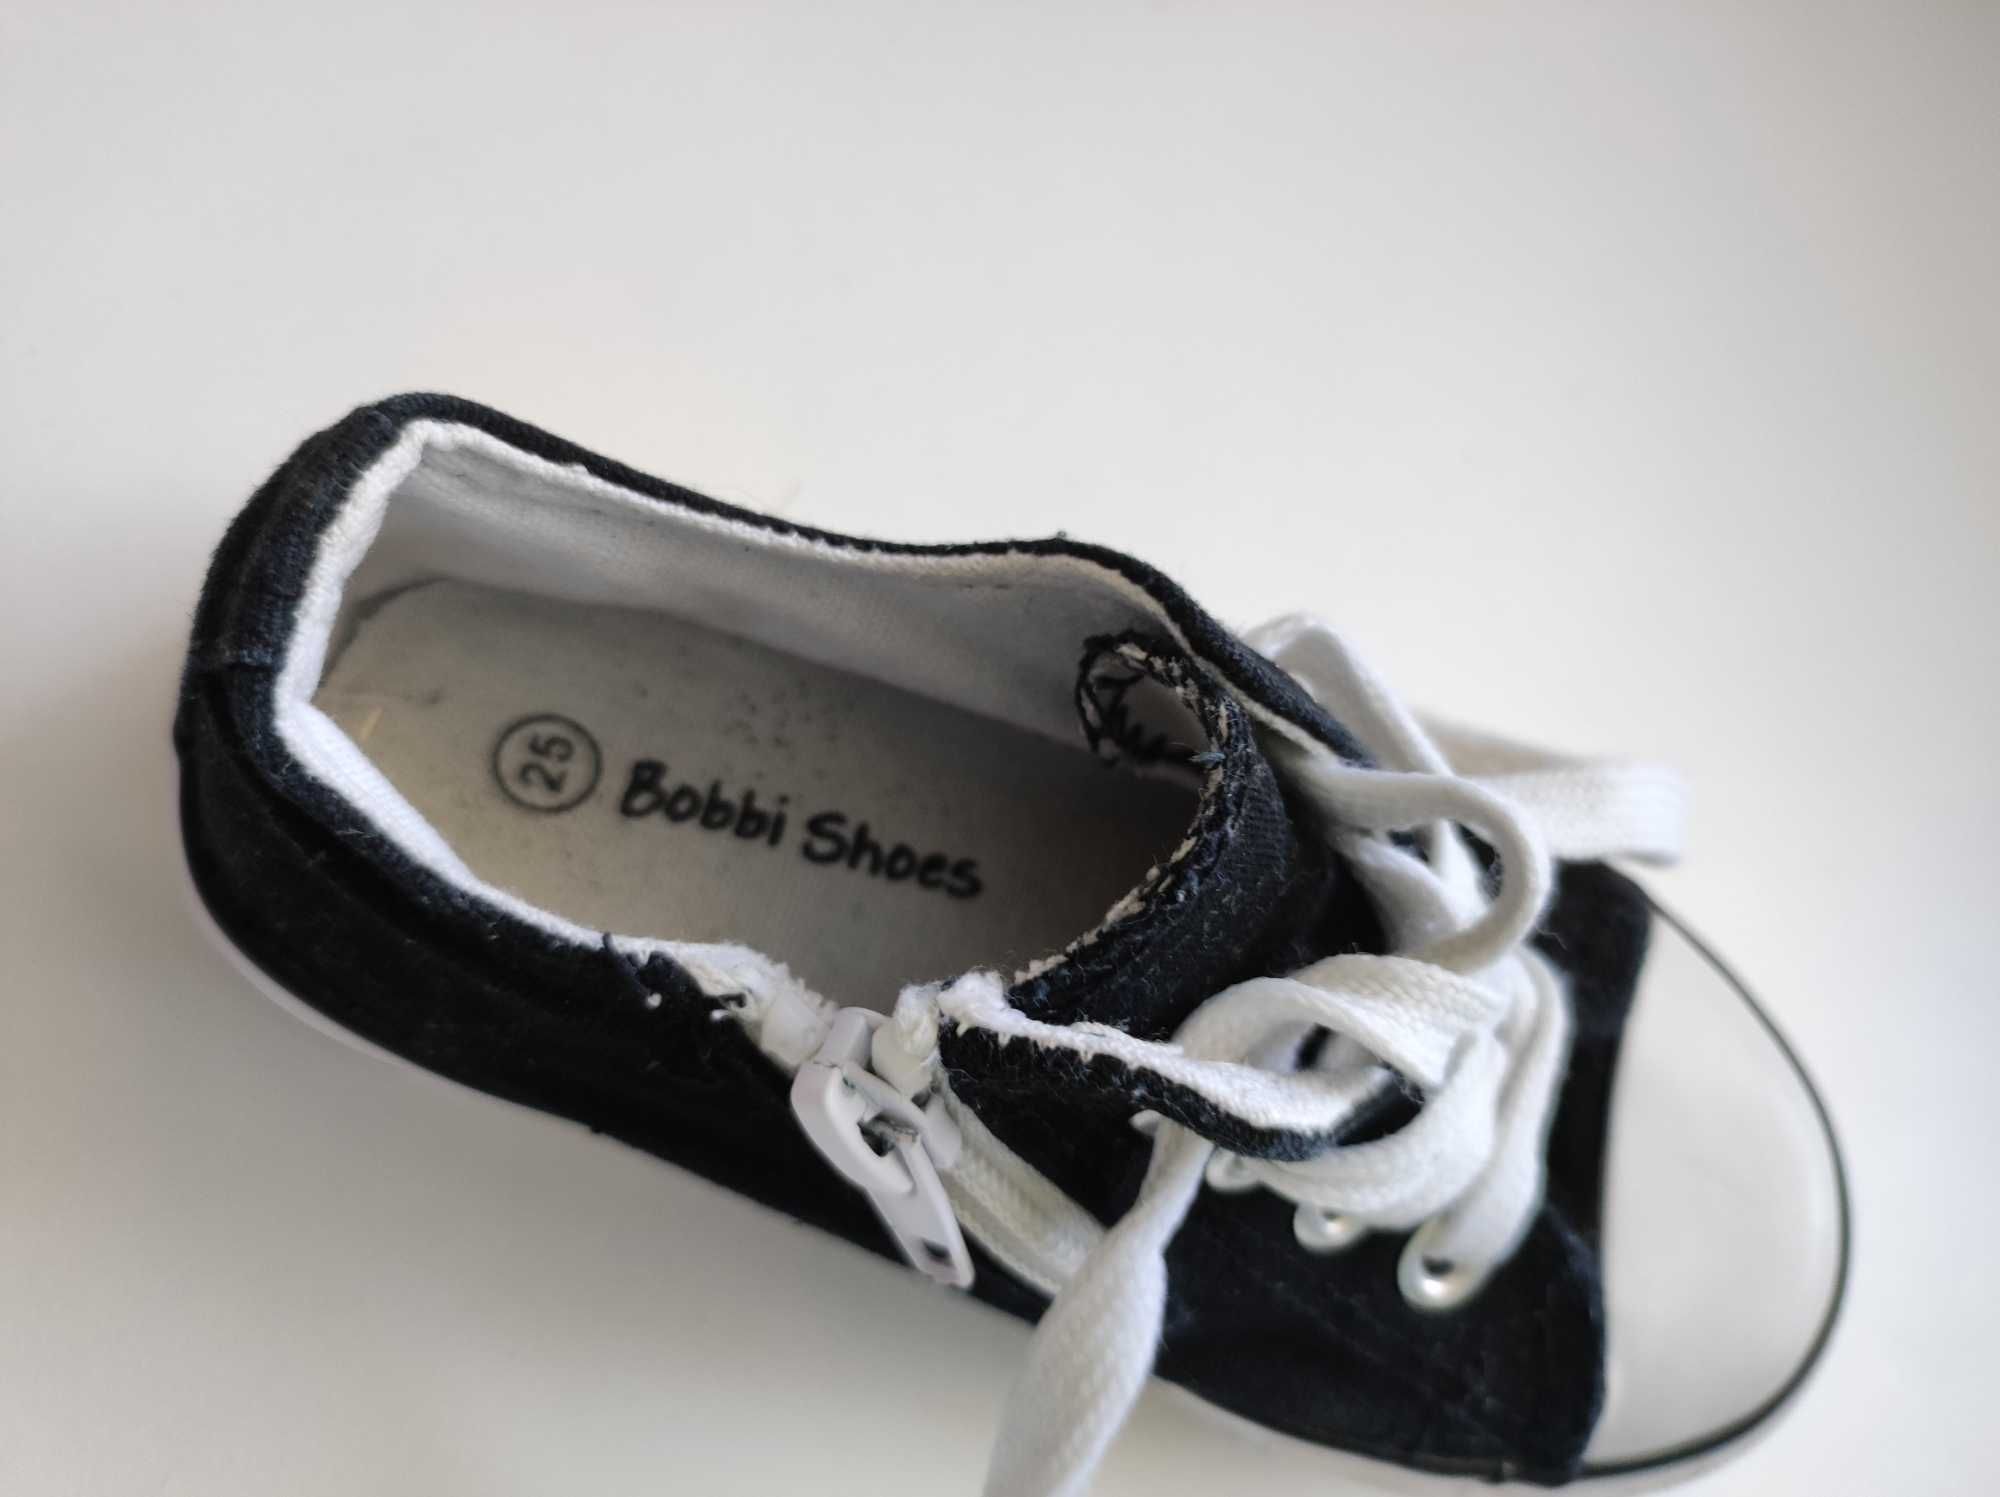 Bobbi shoes tenisówki, trampki rozmiar 25, wkładka 15,5 cm